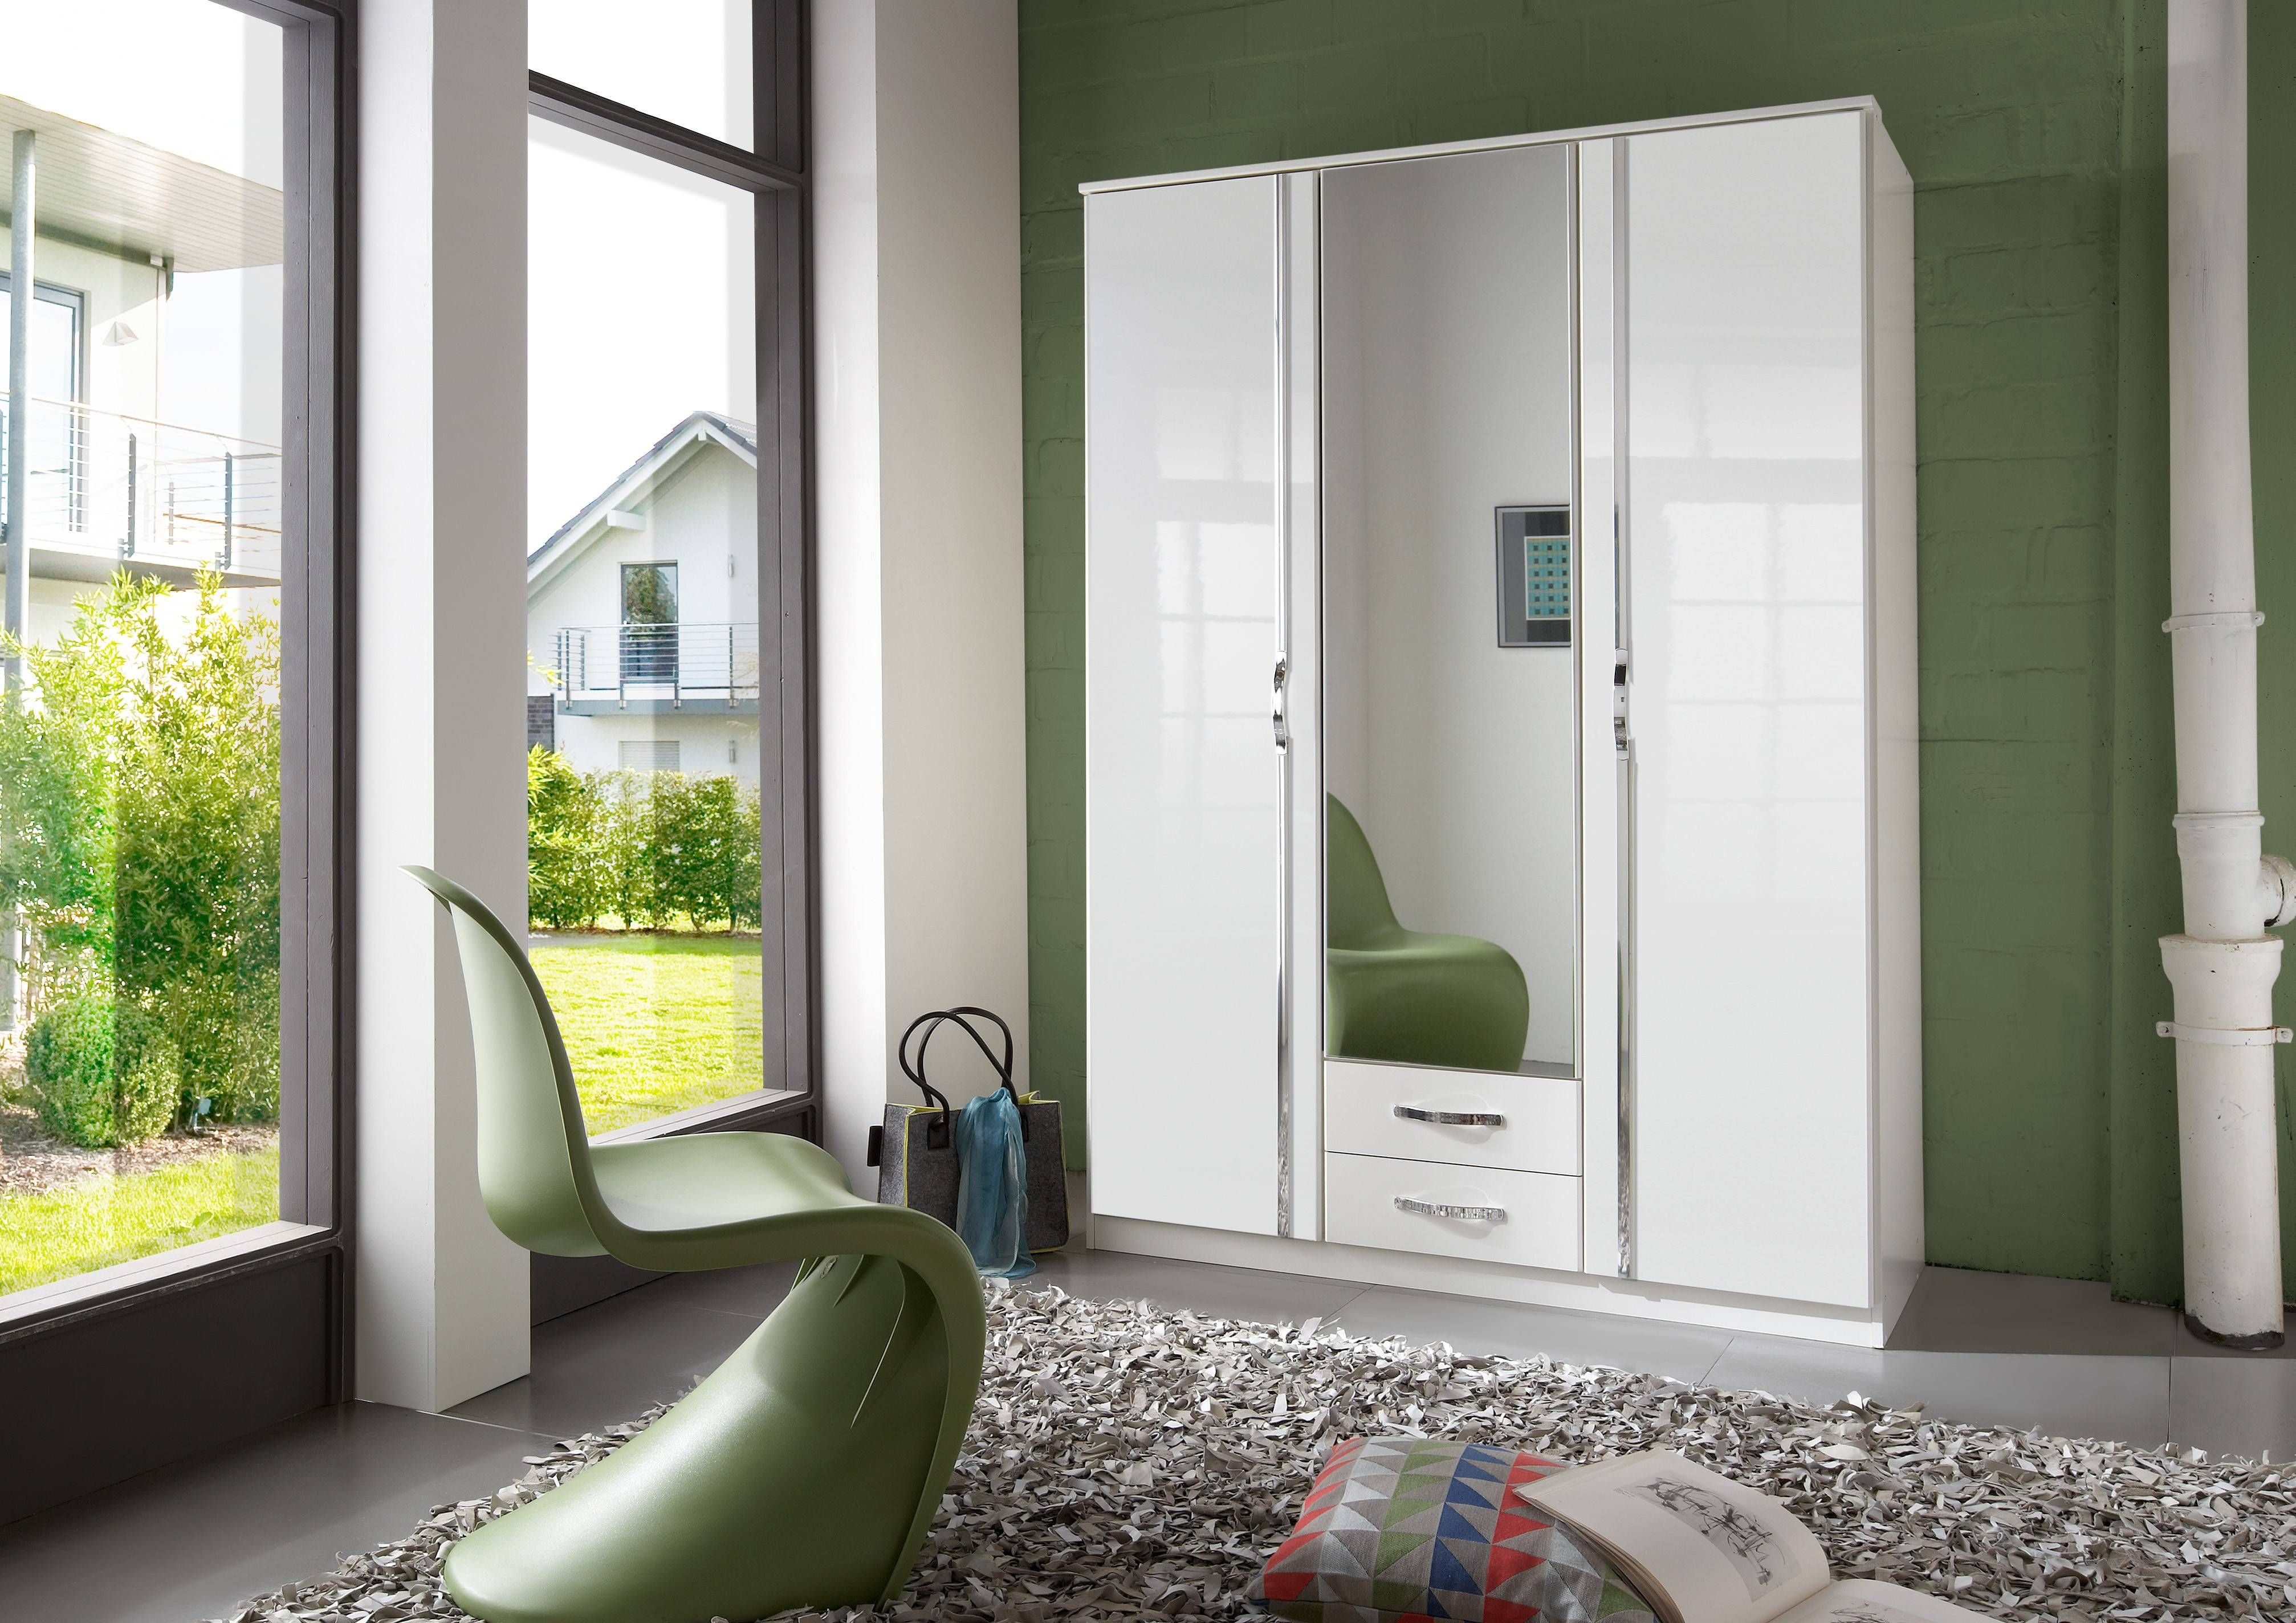 Slumberhaus 'trio' White Gloss, Chrome & Mirror 3 Door 2 Drawer Regarding White 3 Door Mirrored Wardrobes (View 4 of 15)